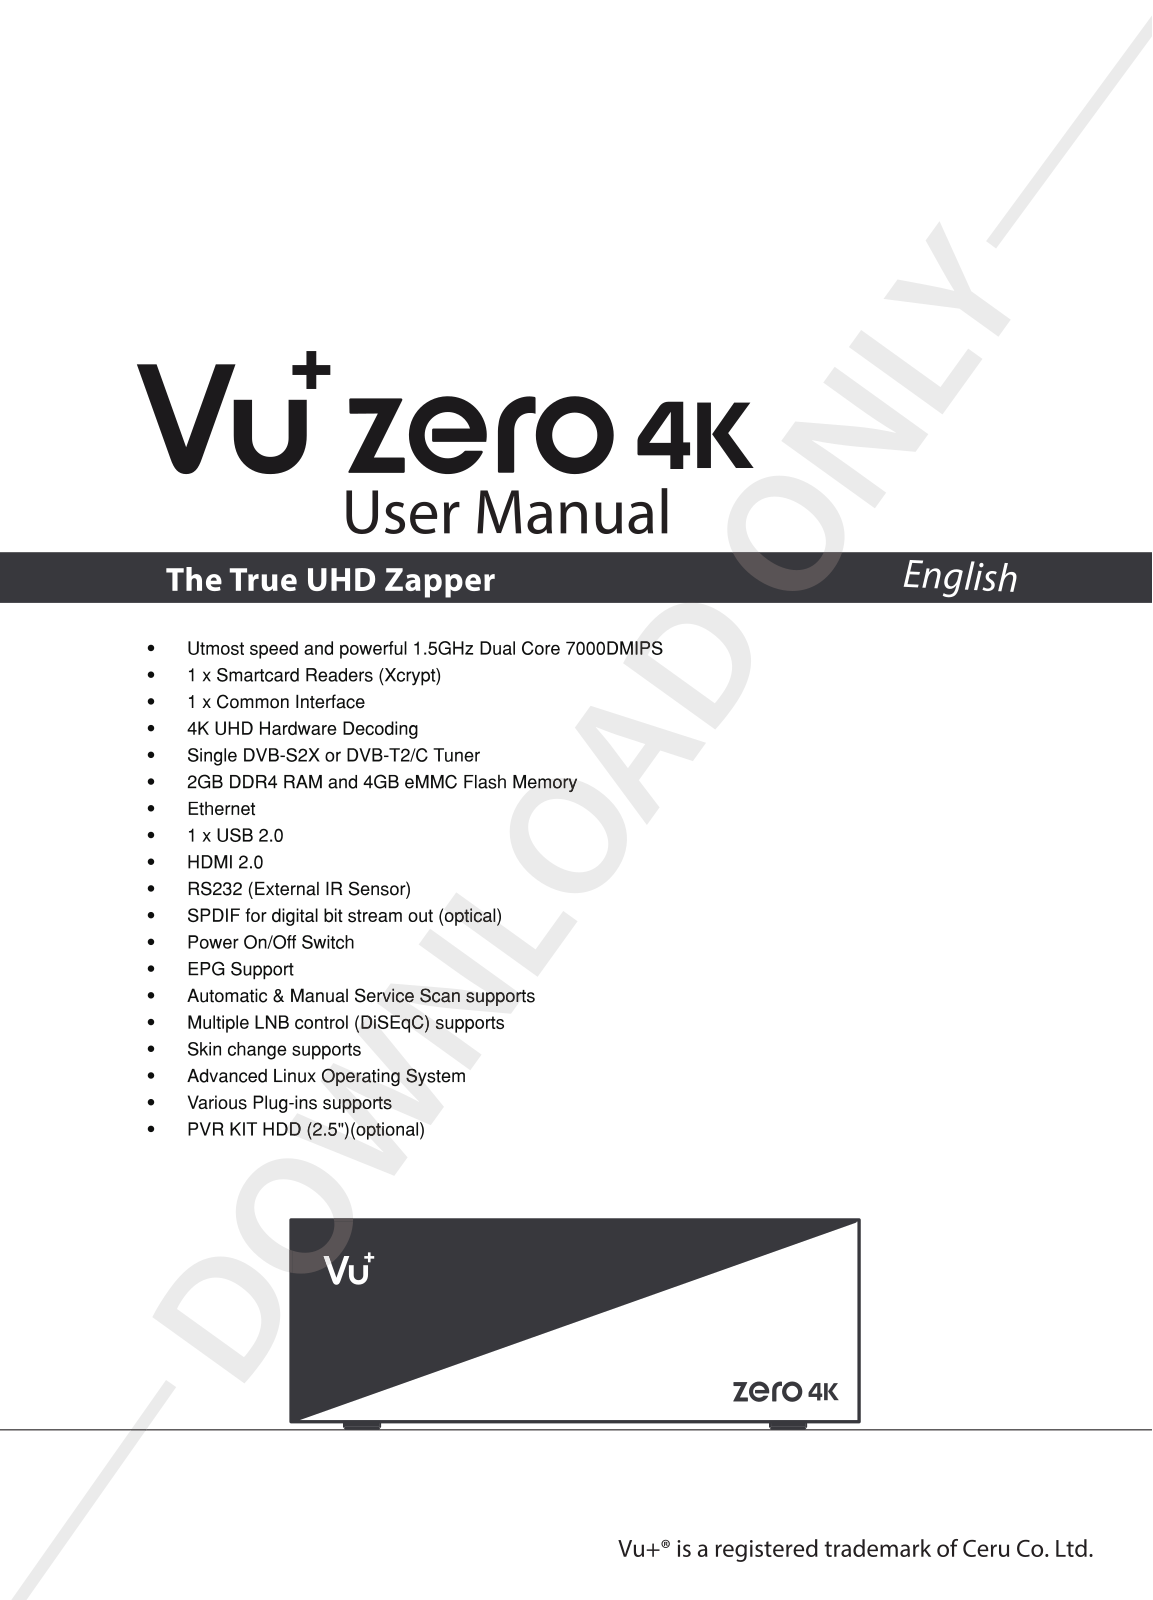 VU+ Zero 4K User Manual